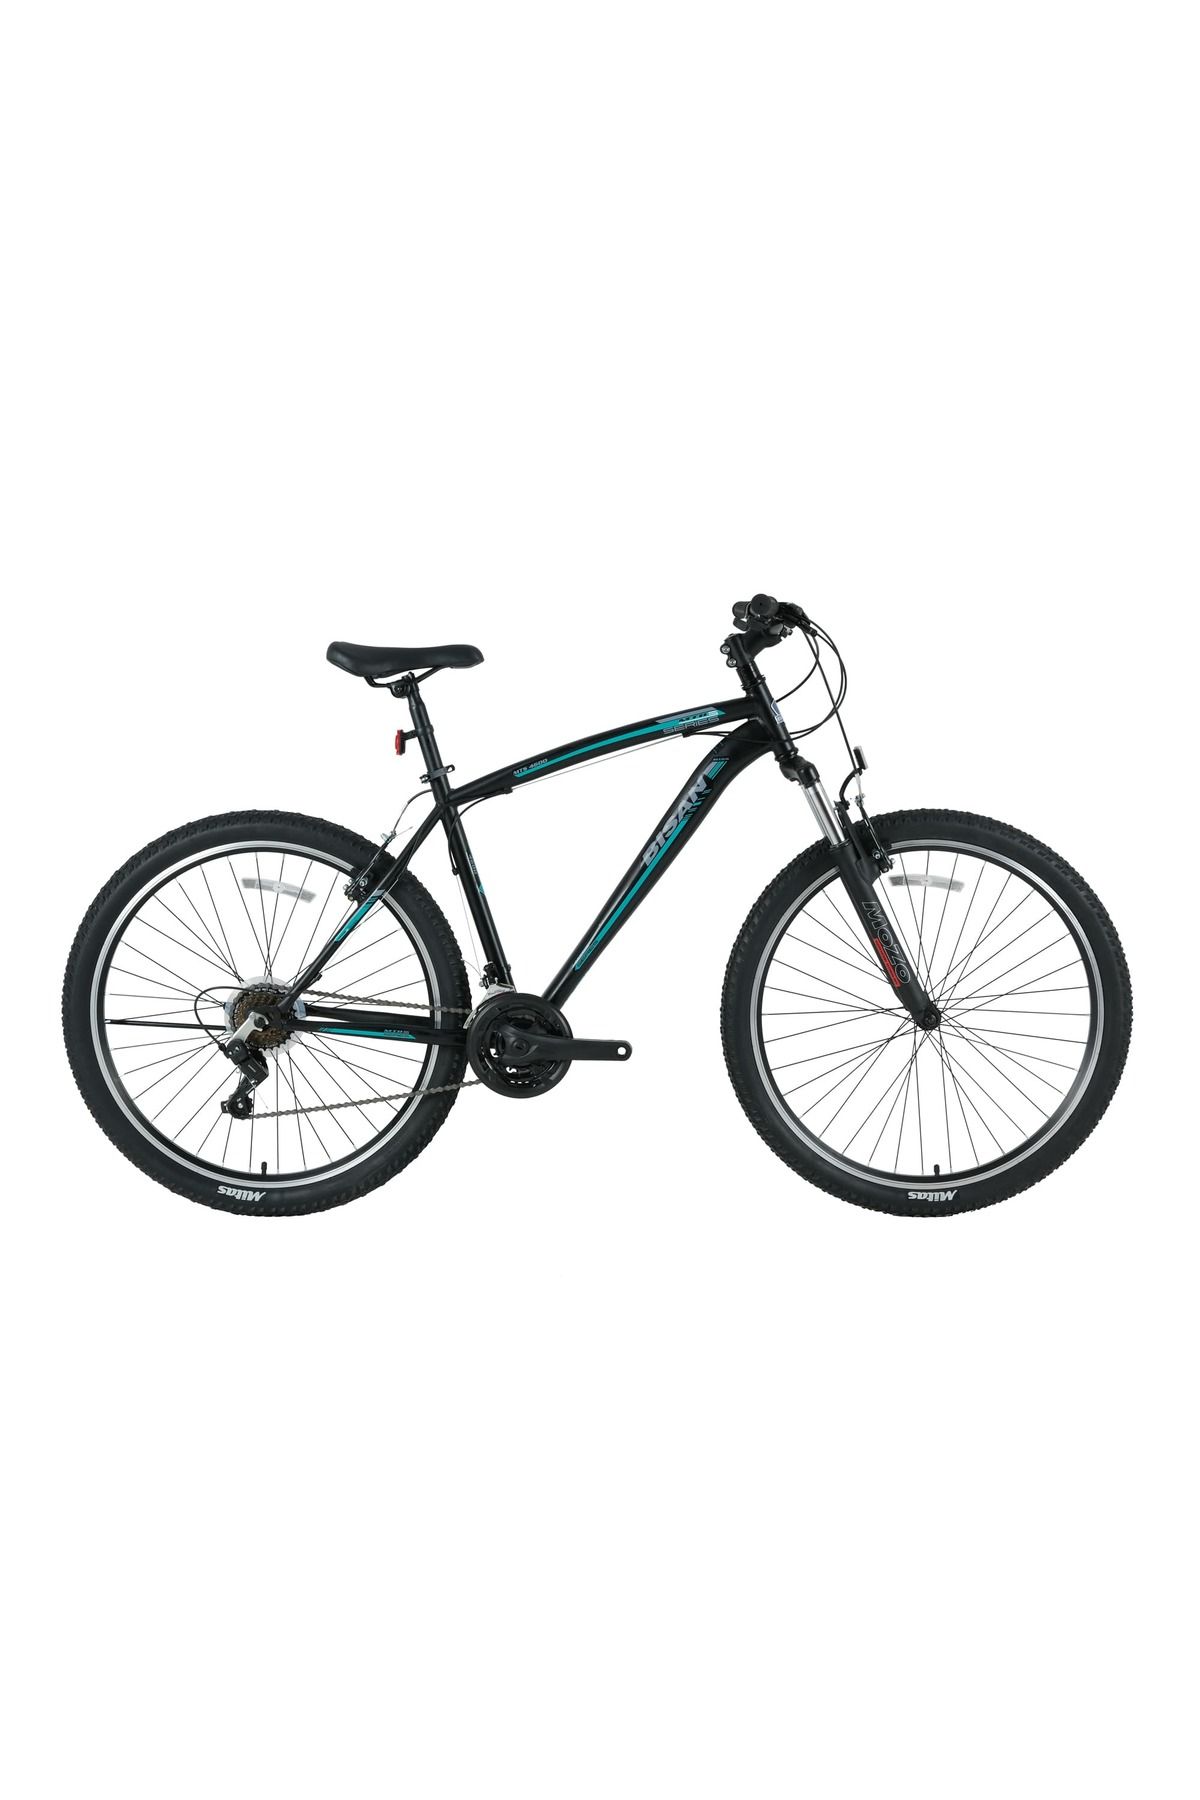 Bisan Mts 4600 V 27,5 Jant 21 Vites Dağ Bisikleti Mat Siyah-yeşil